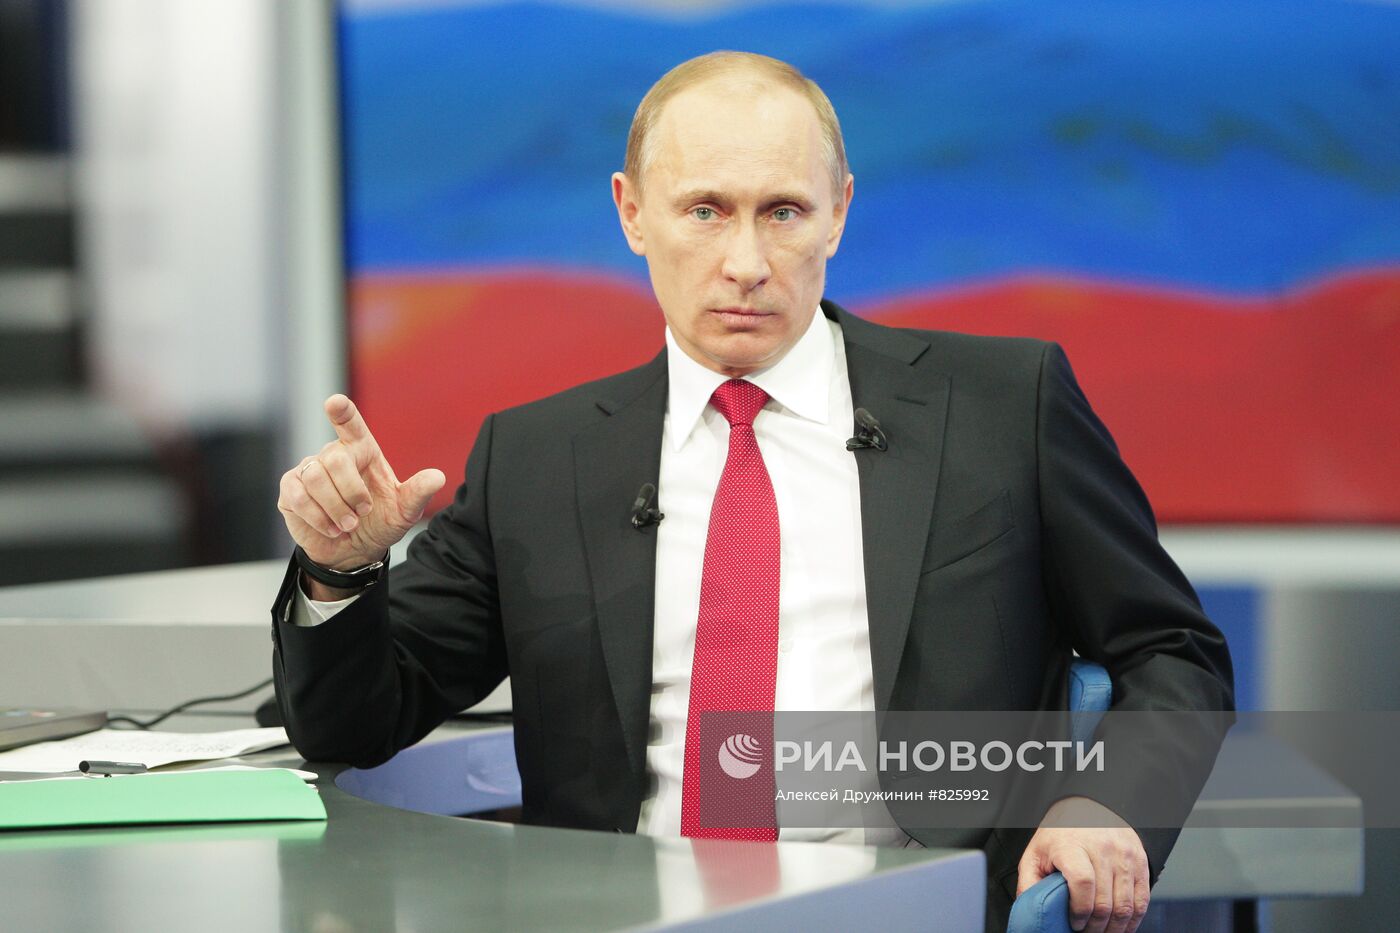 Владимир Путин отвечает на вопросы россиян в прямом эфире